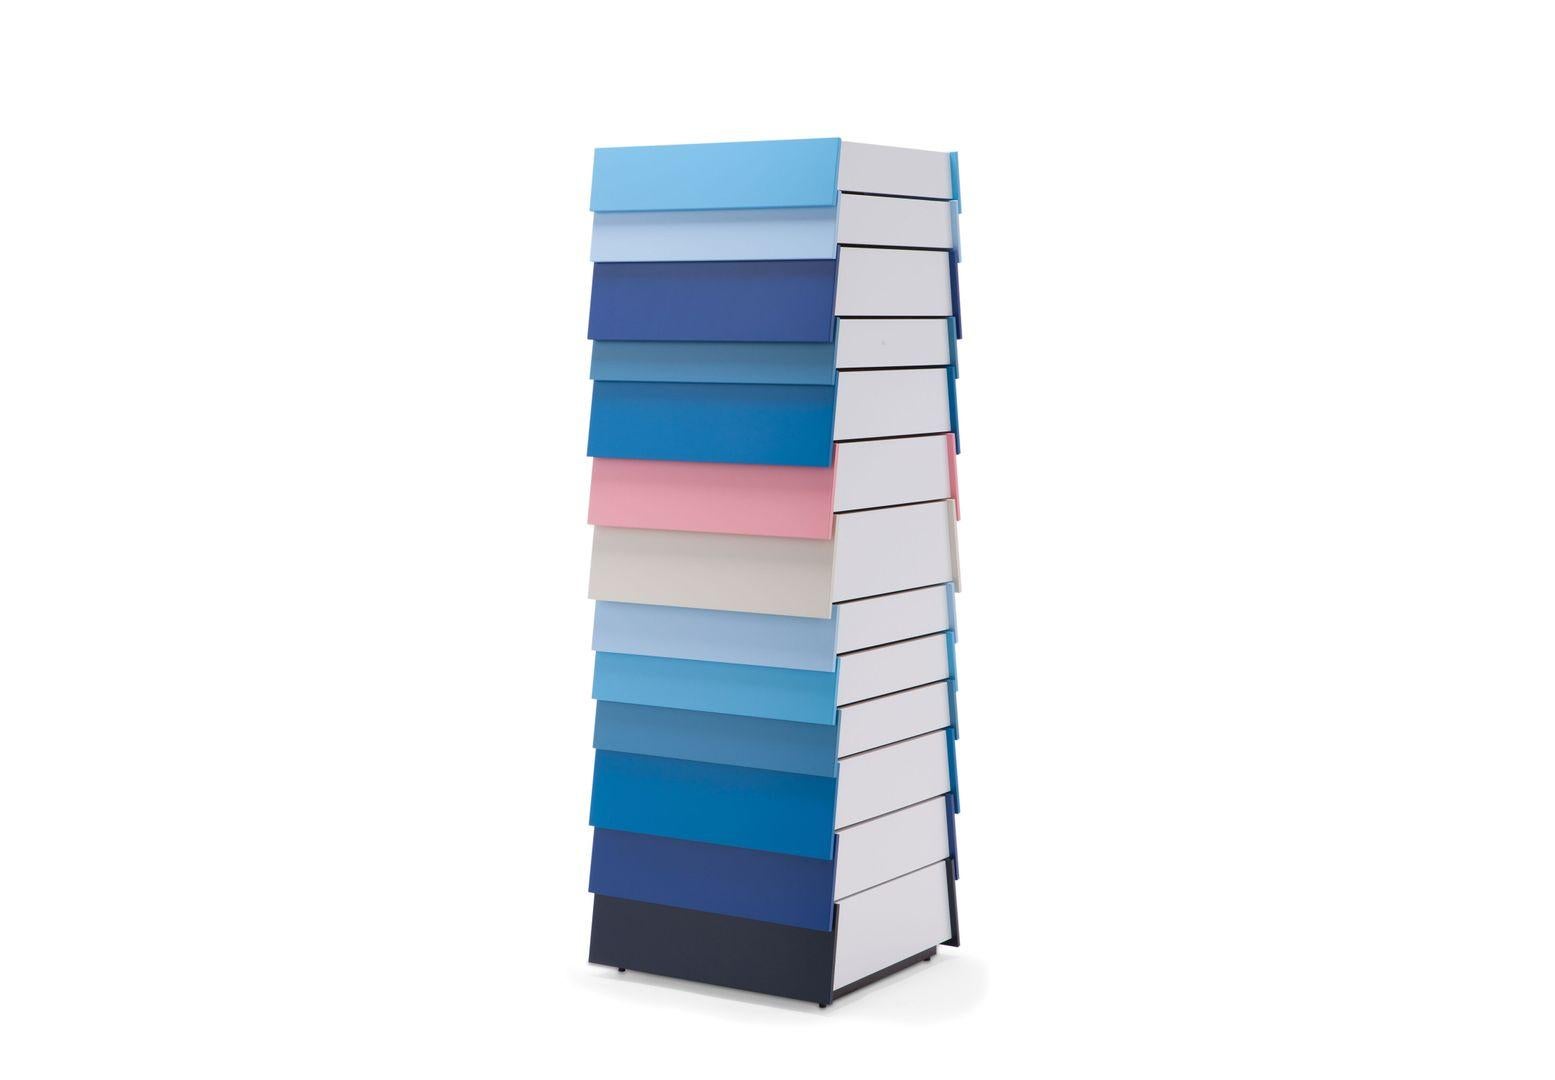 Stack stellt die Konventionen eines traditionellen Schubladenkastens in Frage und besteht aus einzelnen, mehrfarbigen Schubladen, die übereinander zu schweben scheinen und sich in beide Richtungen öffnen, wodurch eine unregelmäßige Komposition